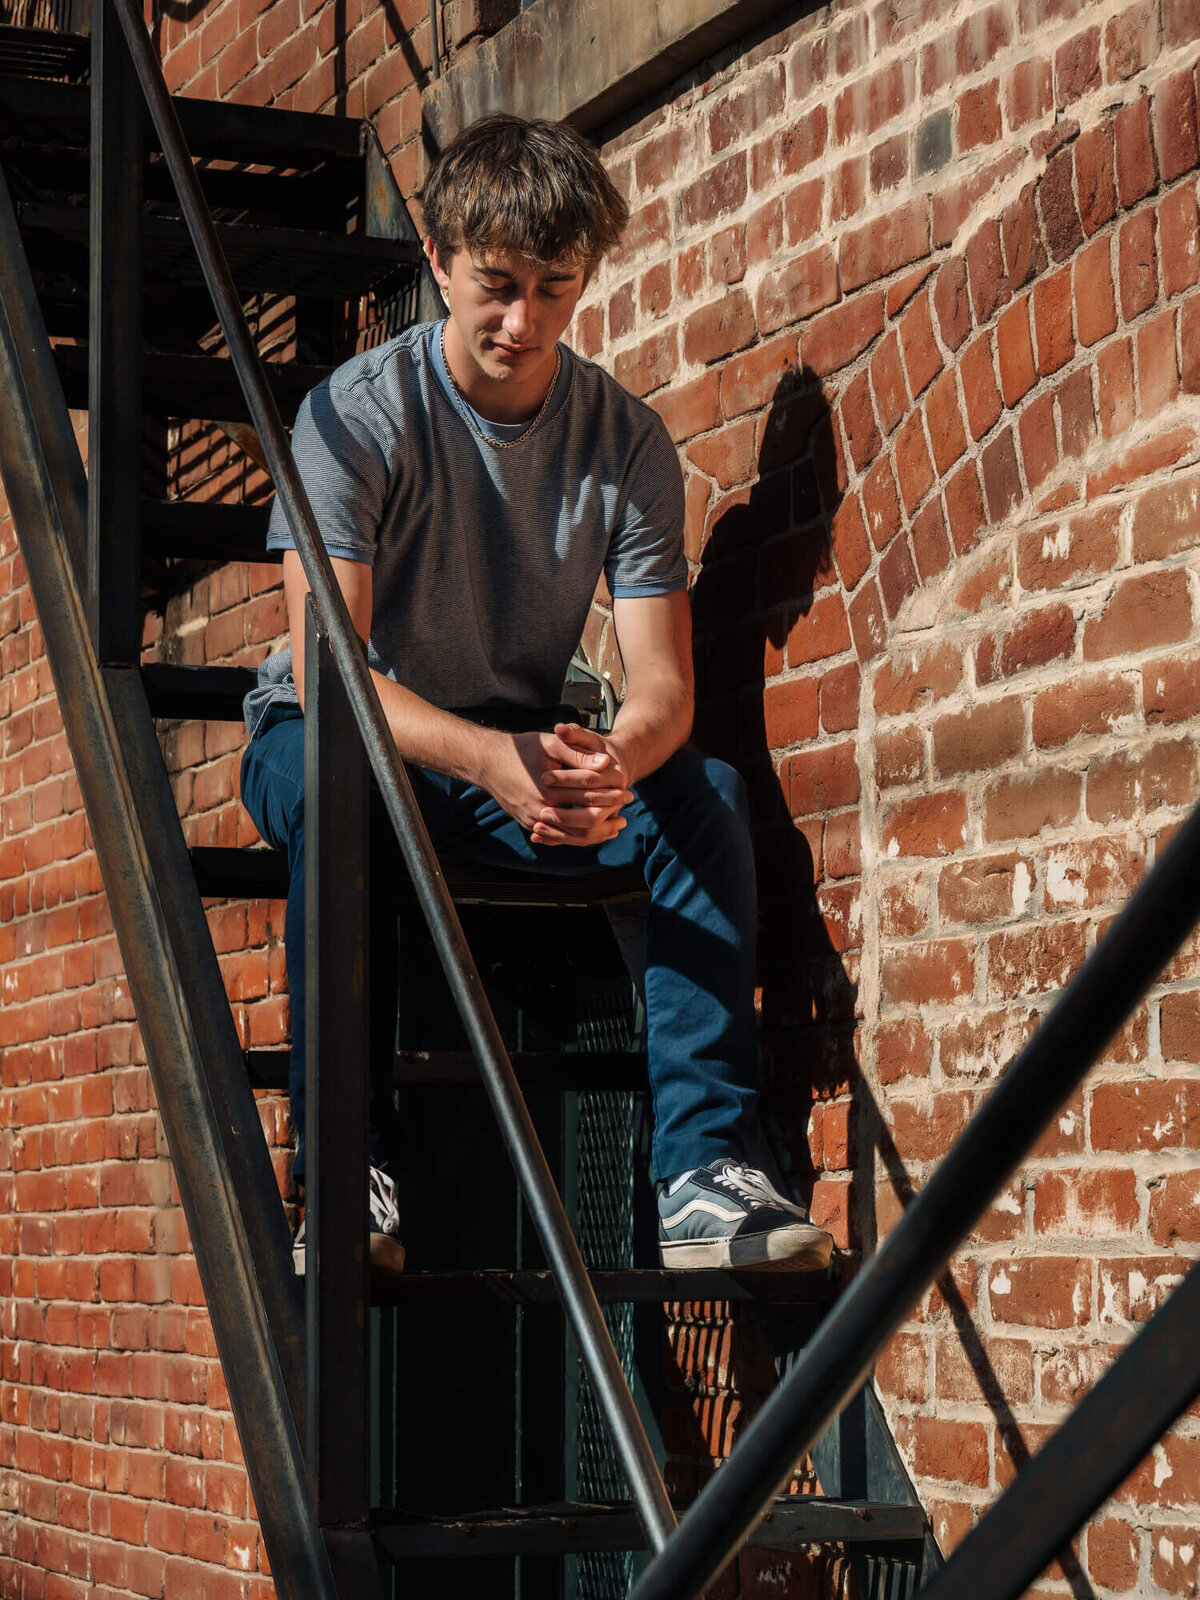 Boy poses downtown on steps in Prescott senior photos